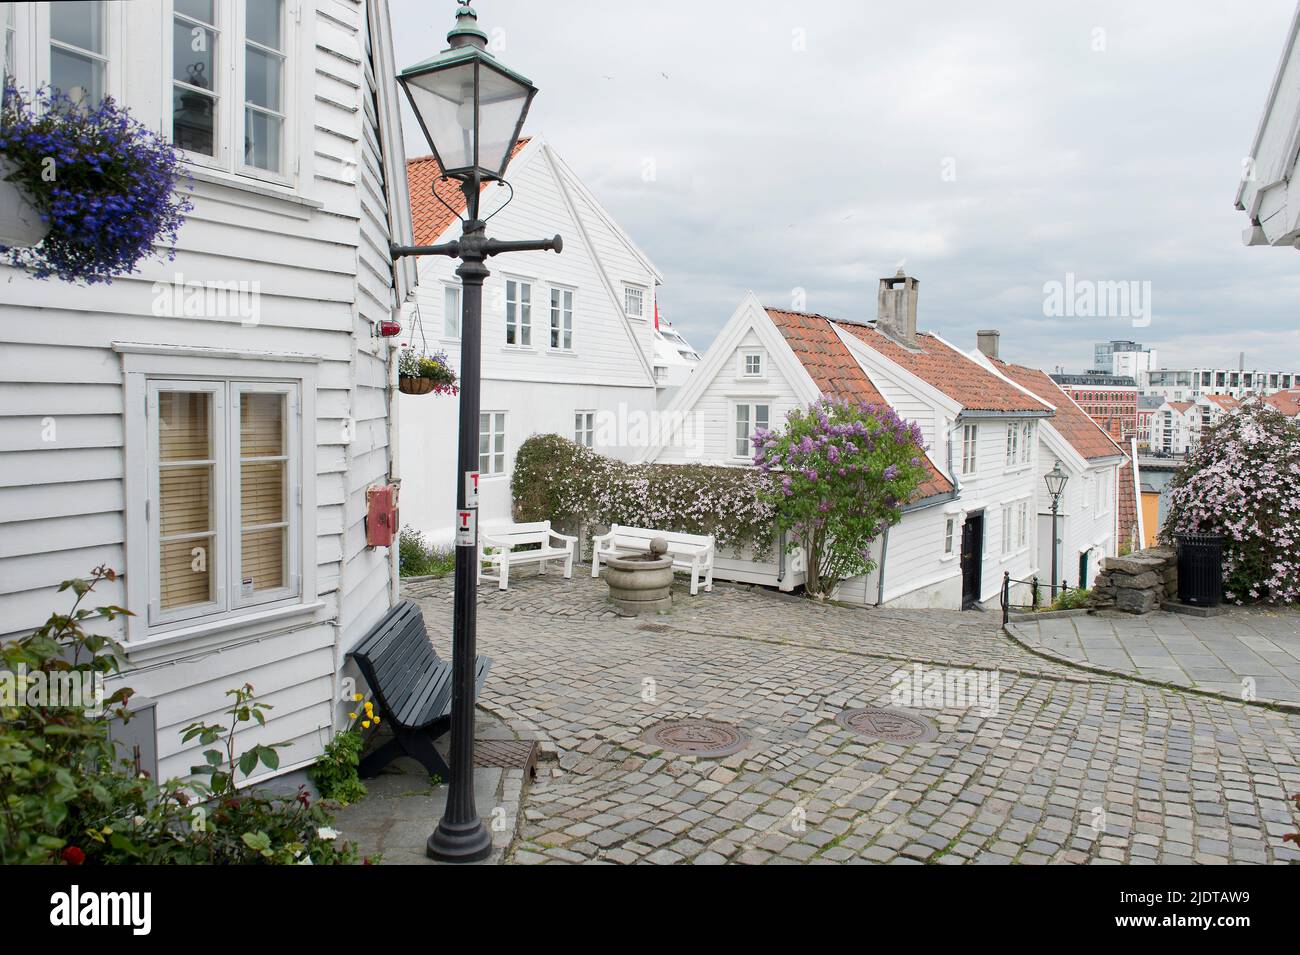 Maisons et rues étroites dans la vieille partie de Stavanger, Norvège, localement connu sous le nom de 'Gamle Stavanger'. Les 173 bâtiments datent de 1700 et 1800 cents Banque D'Images